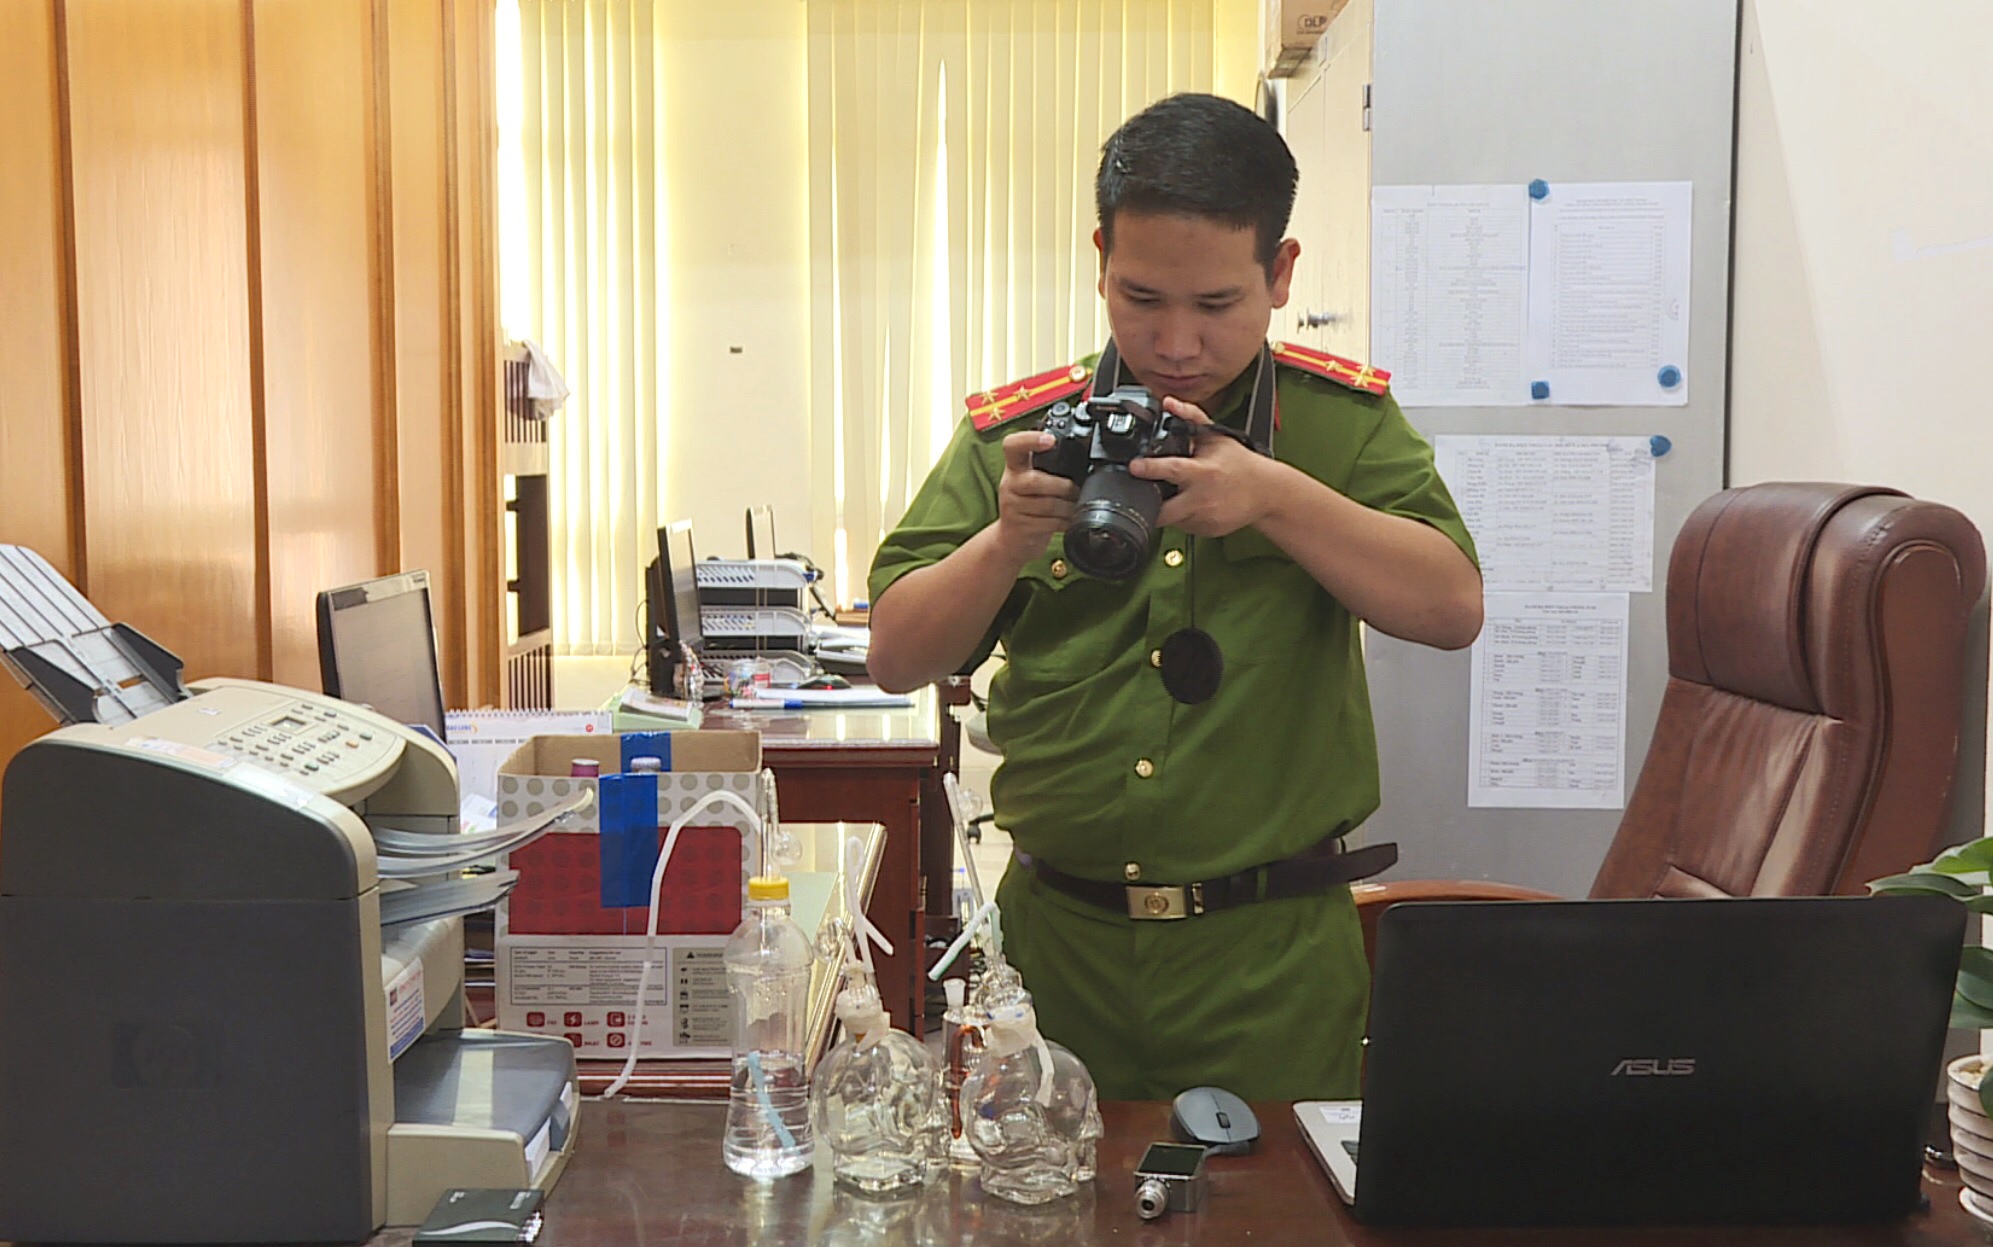 Thượng uý Nguyễn Văn Hoang chuẩn bị hình ảnh để trình chiếu trình các buổi tuyên truyền cho học sinh, sinh viên.